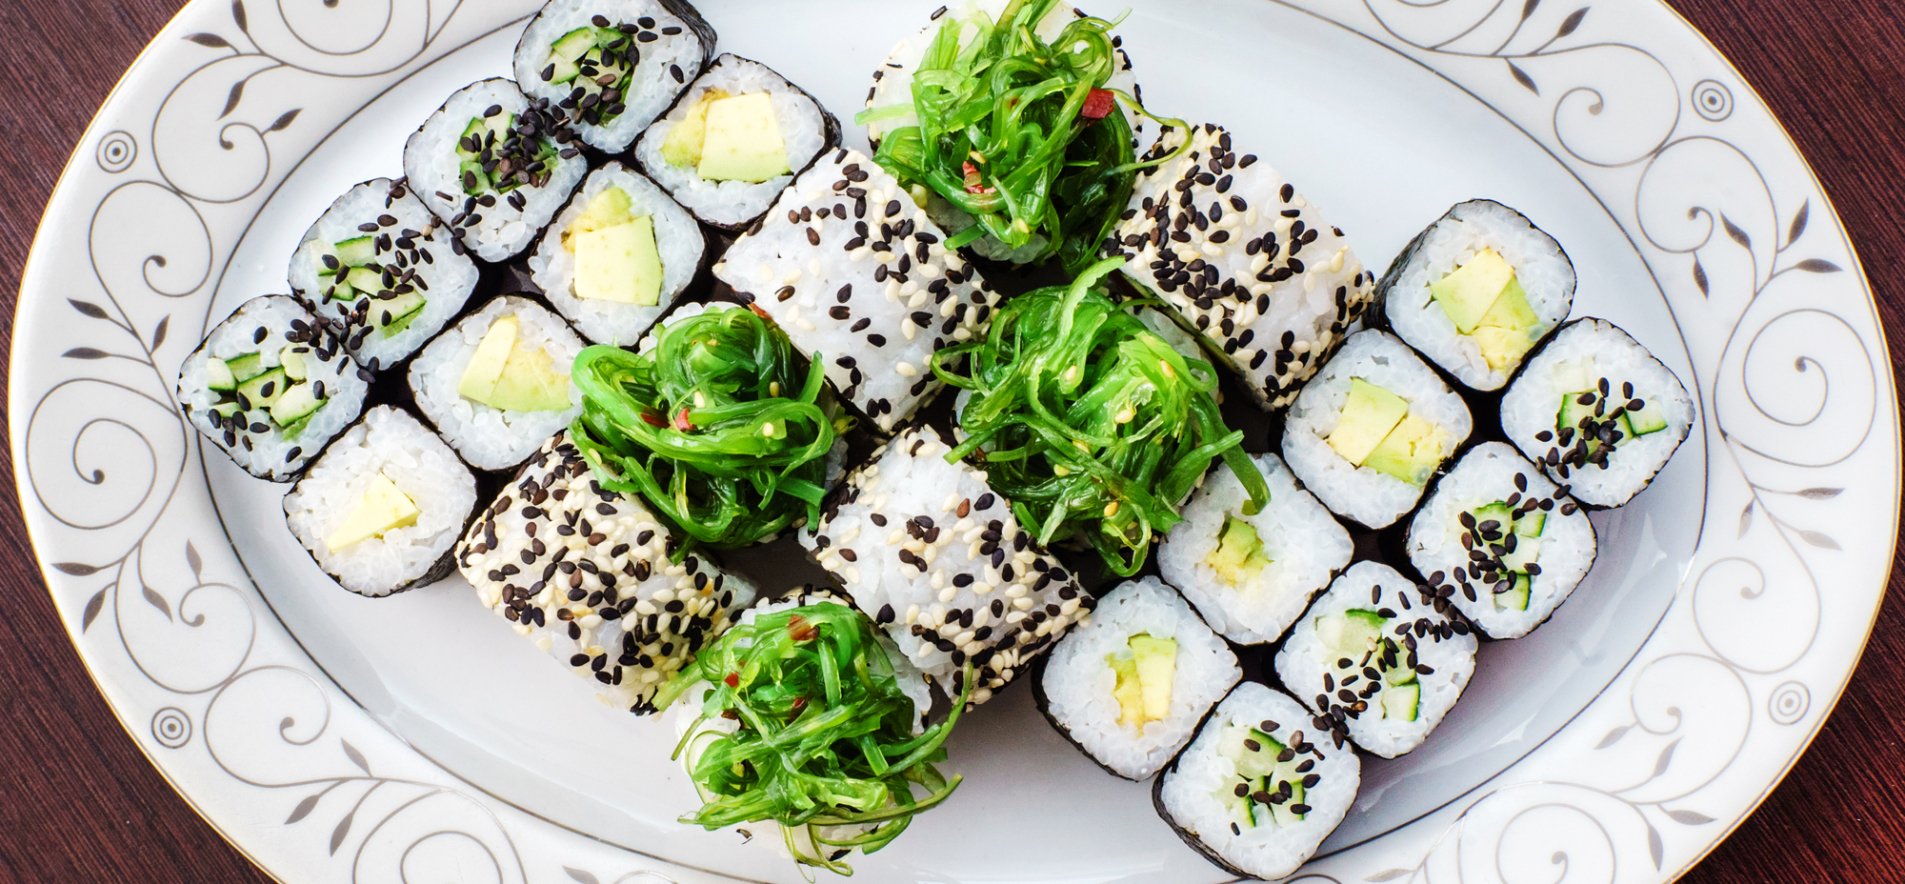 22 лучших рецепта роллов и суши в домашних условиях: простые и вкусные идеи